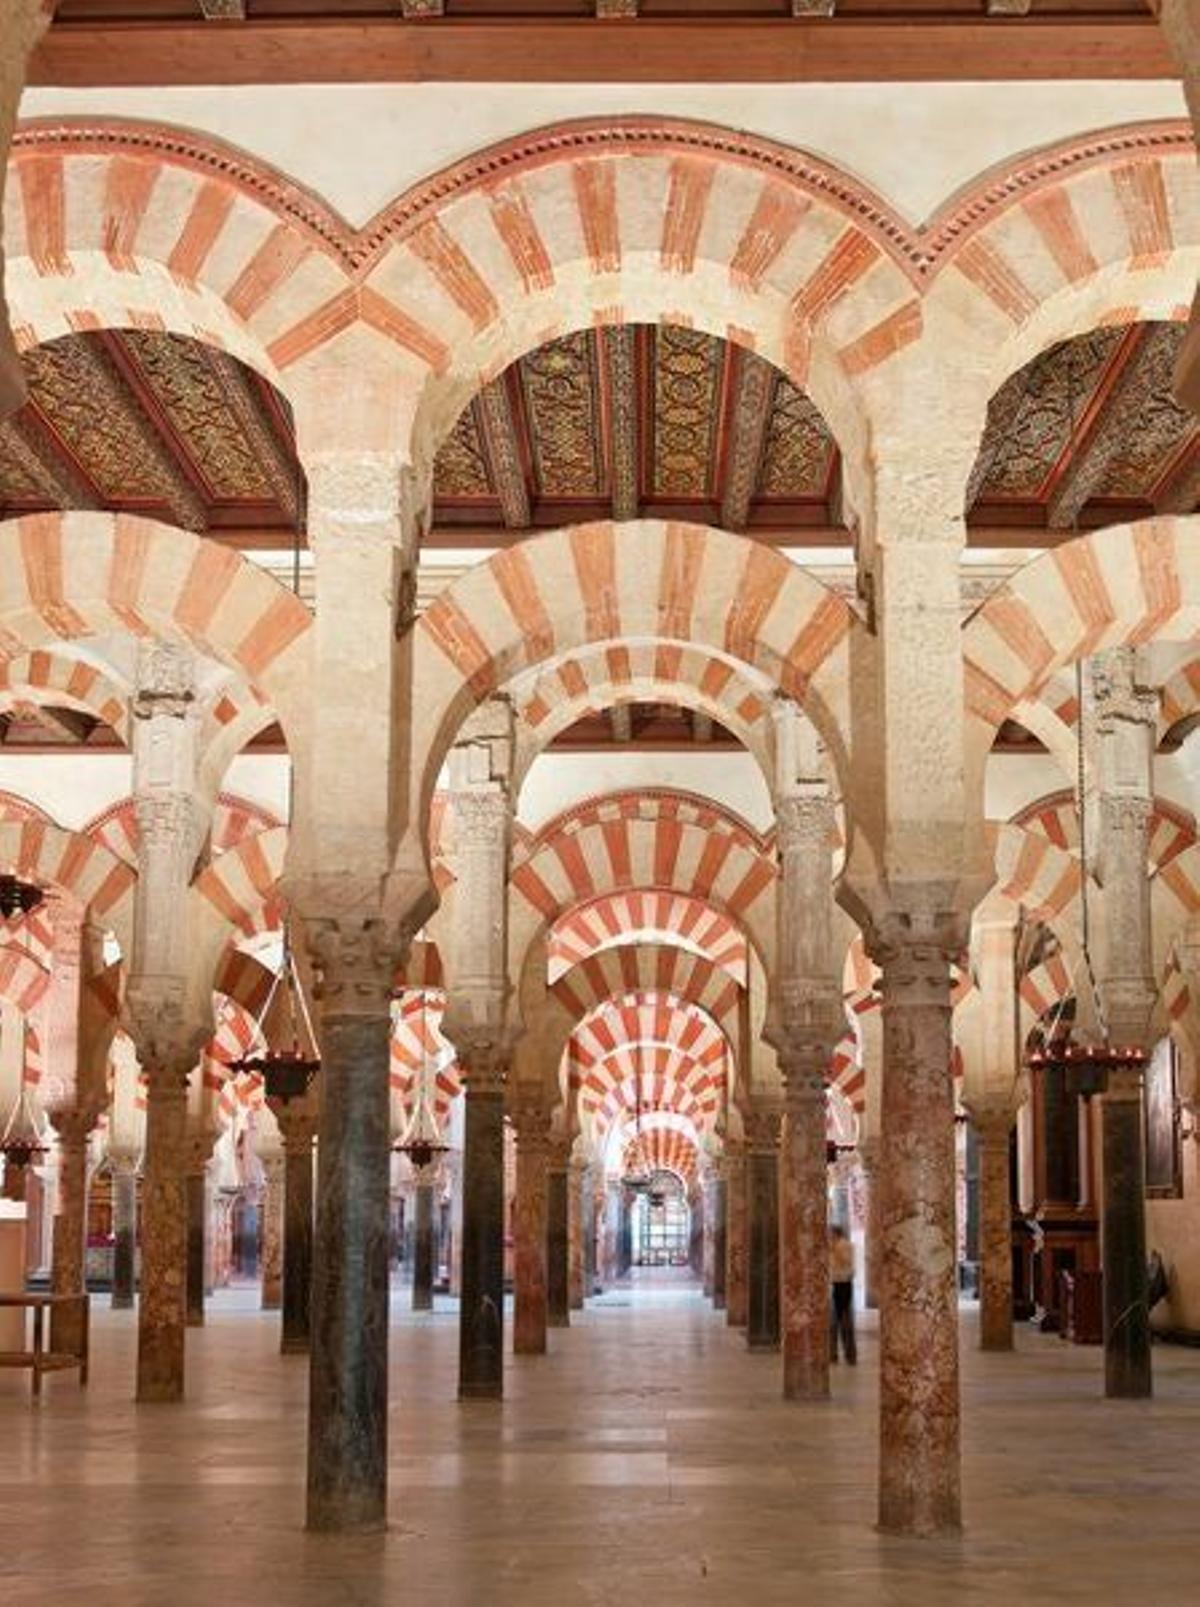 Bosque de arcos en Córdoba